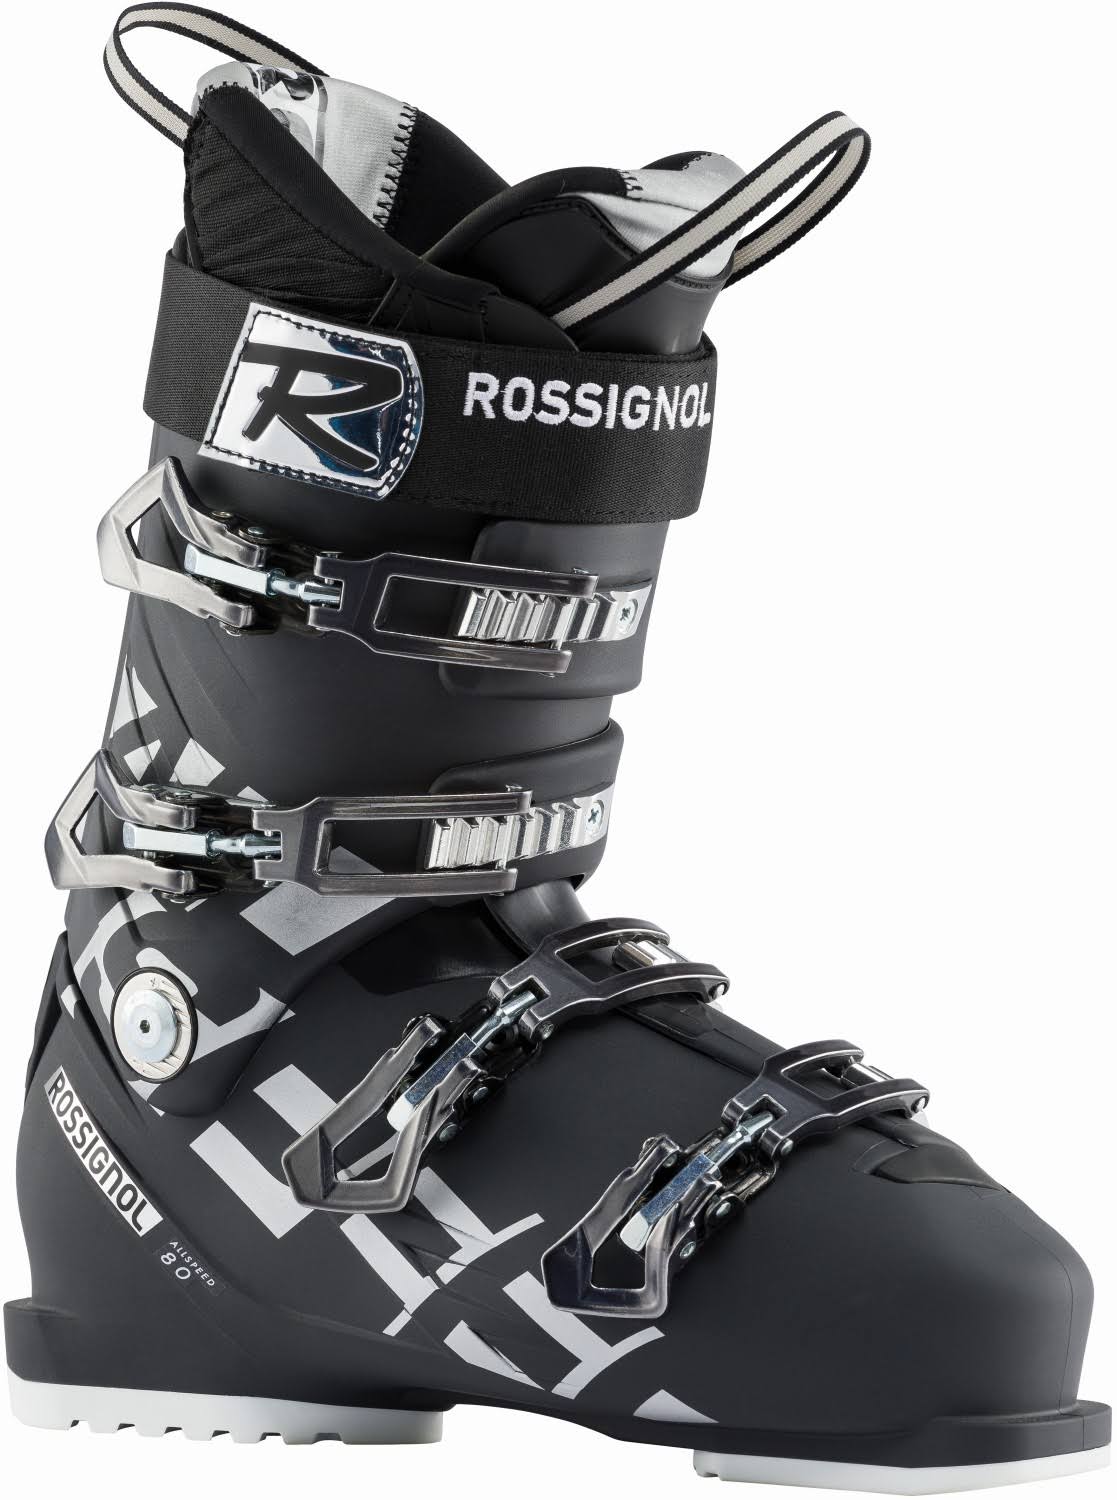 Rossignol Allspeed 80 Alpine Ski Boots Black 26.5